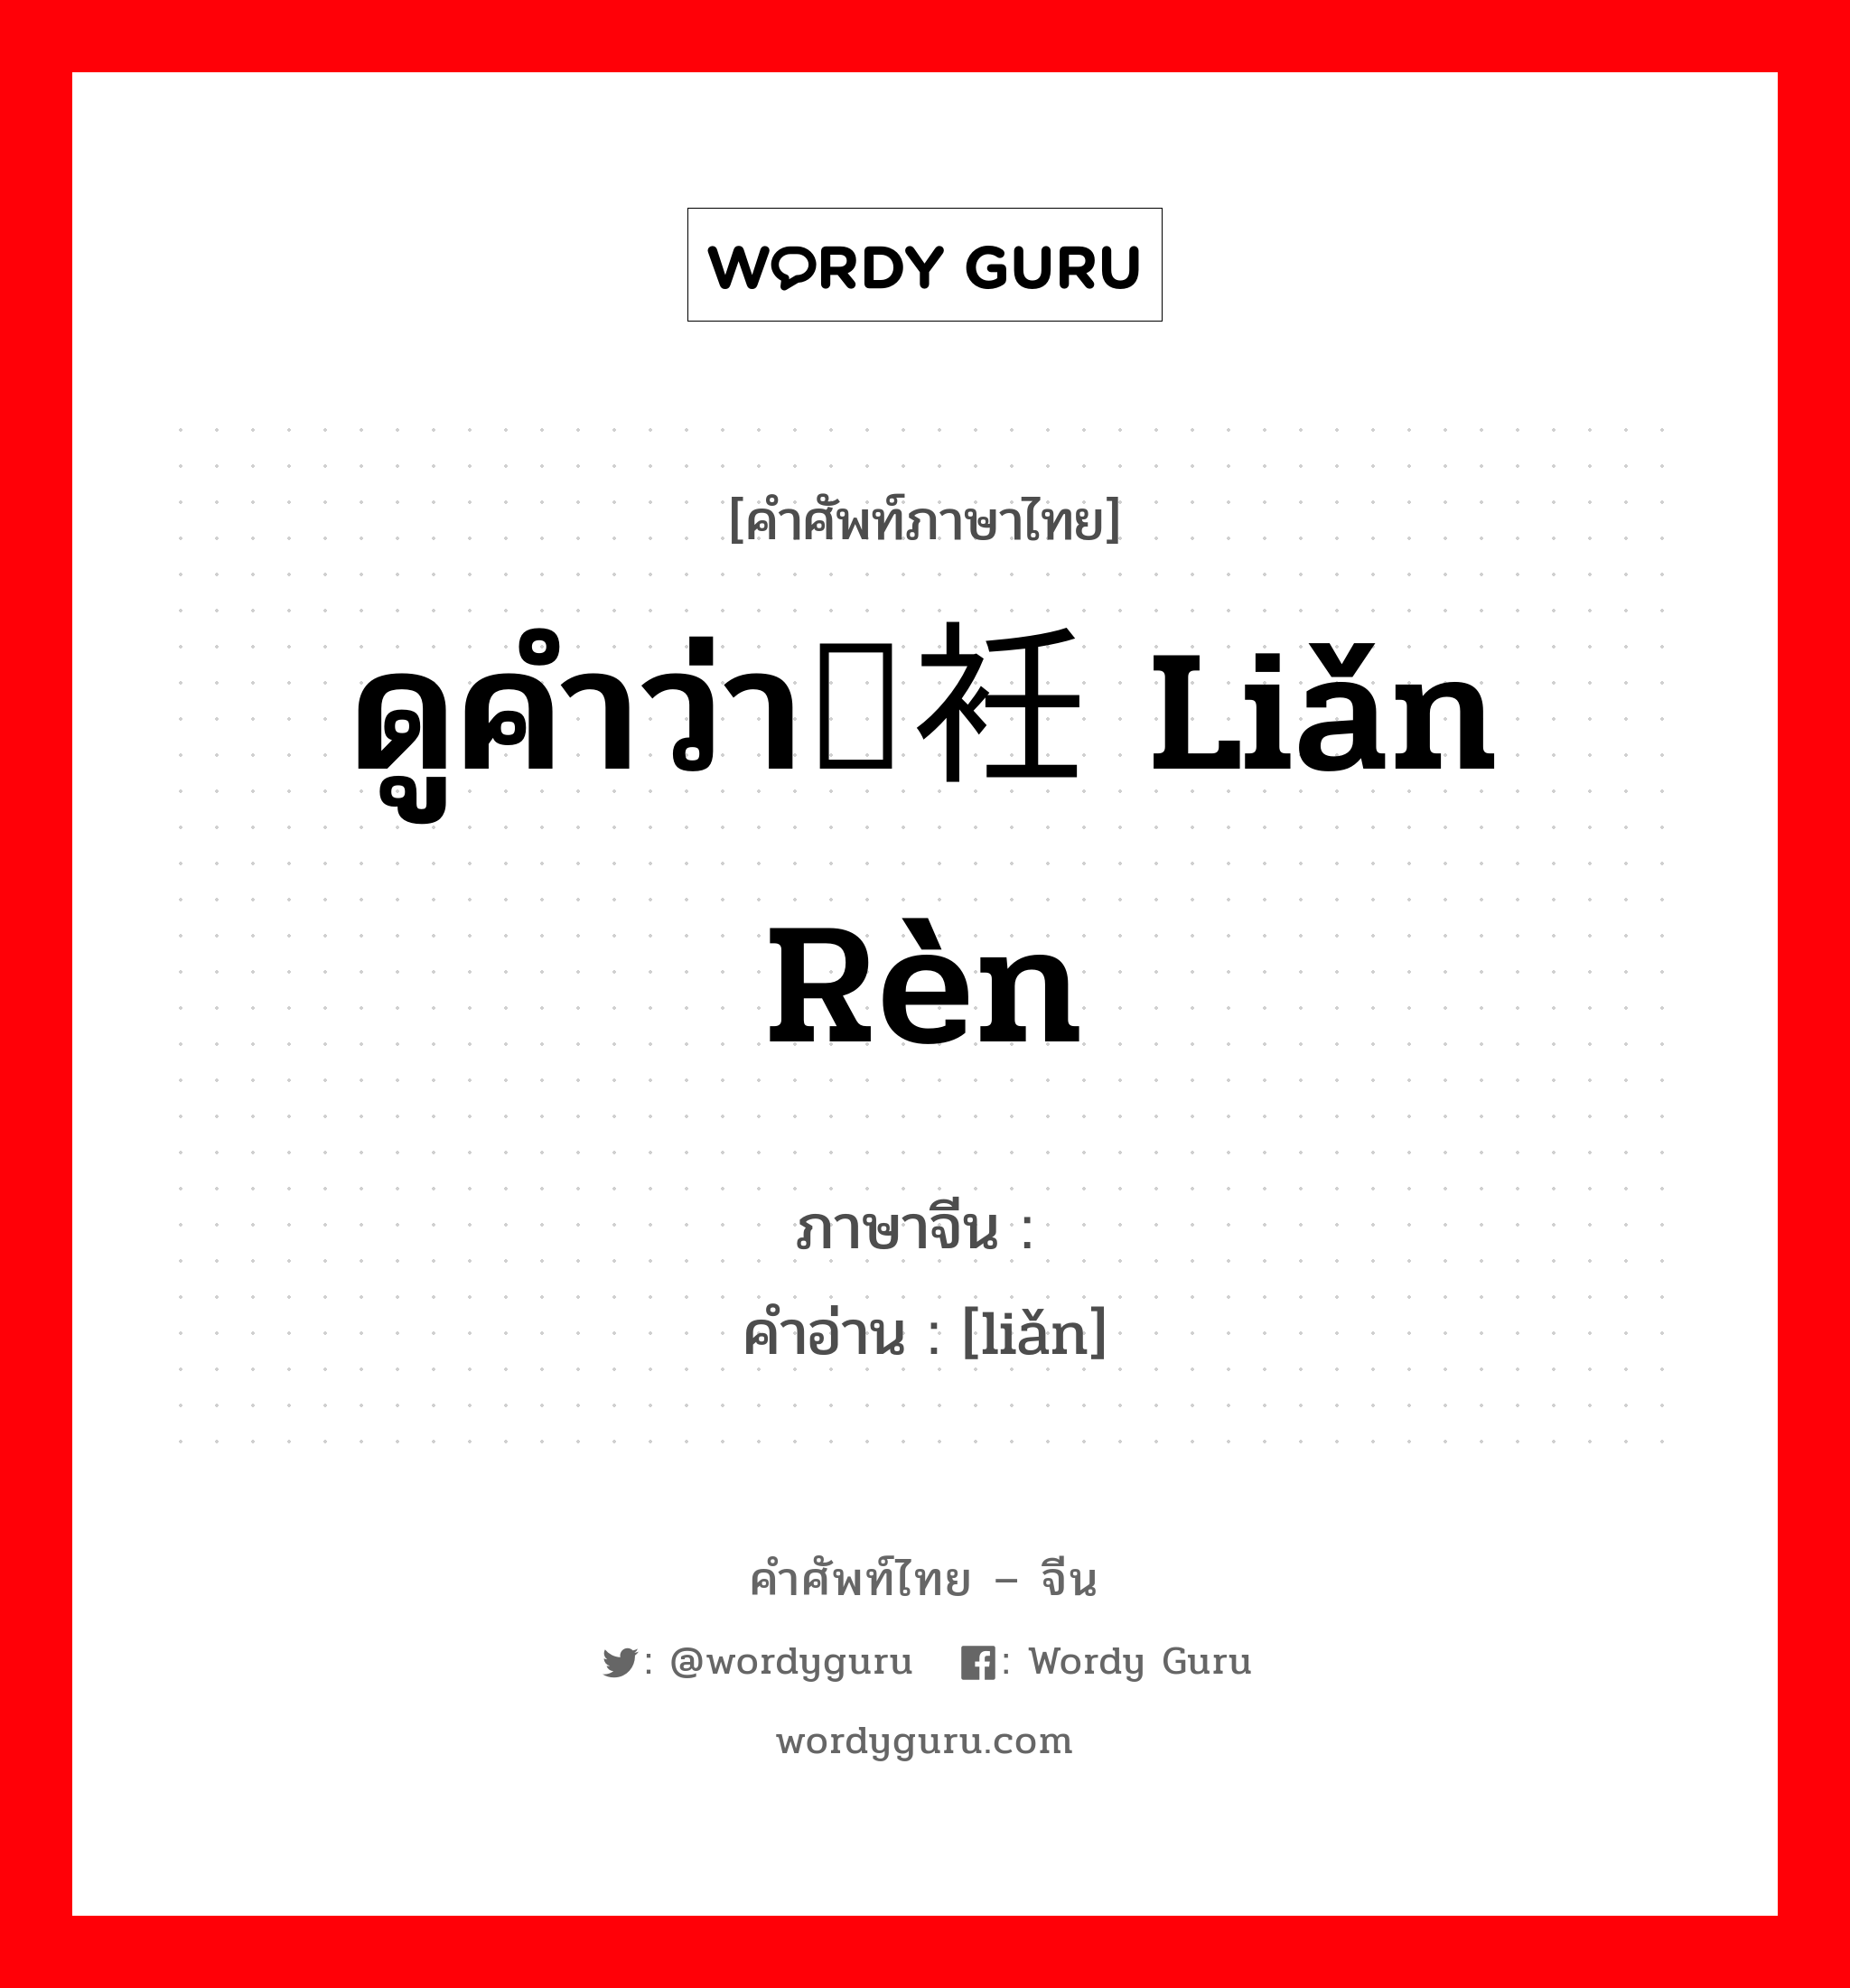 ดูคำว่า裣衽 liǎn rèn ภาษาจีนคืออะไร, คำศัพท์ภาษาไทย - จีน ดูคำว่า裣衽 liǎn rèn ภาษาจีน 裣 คำอ่าน [liǎn]